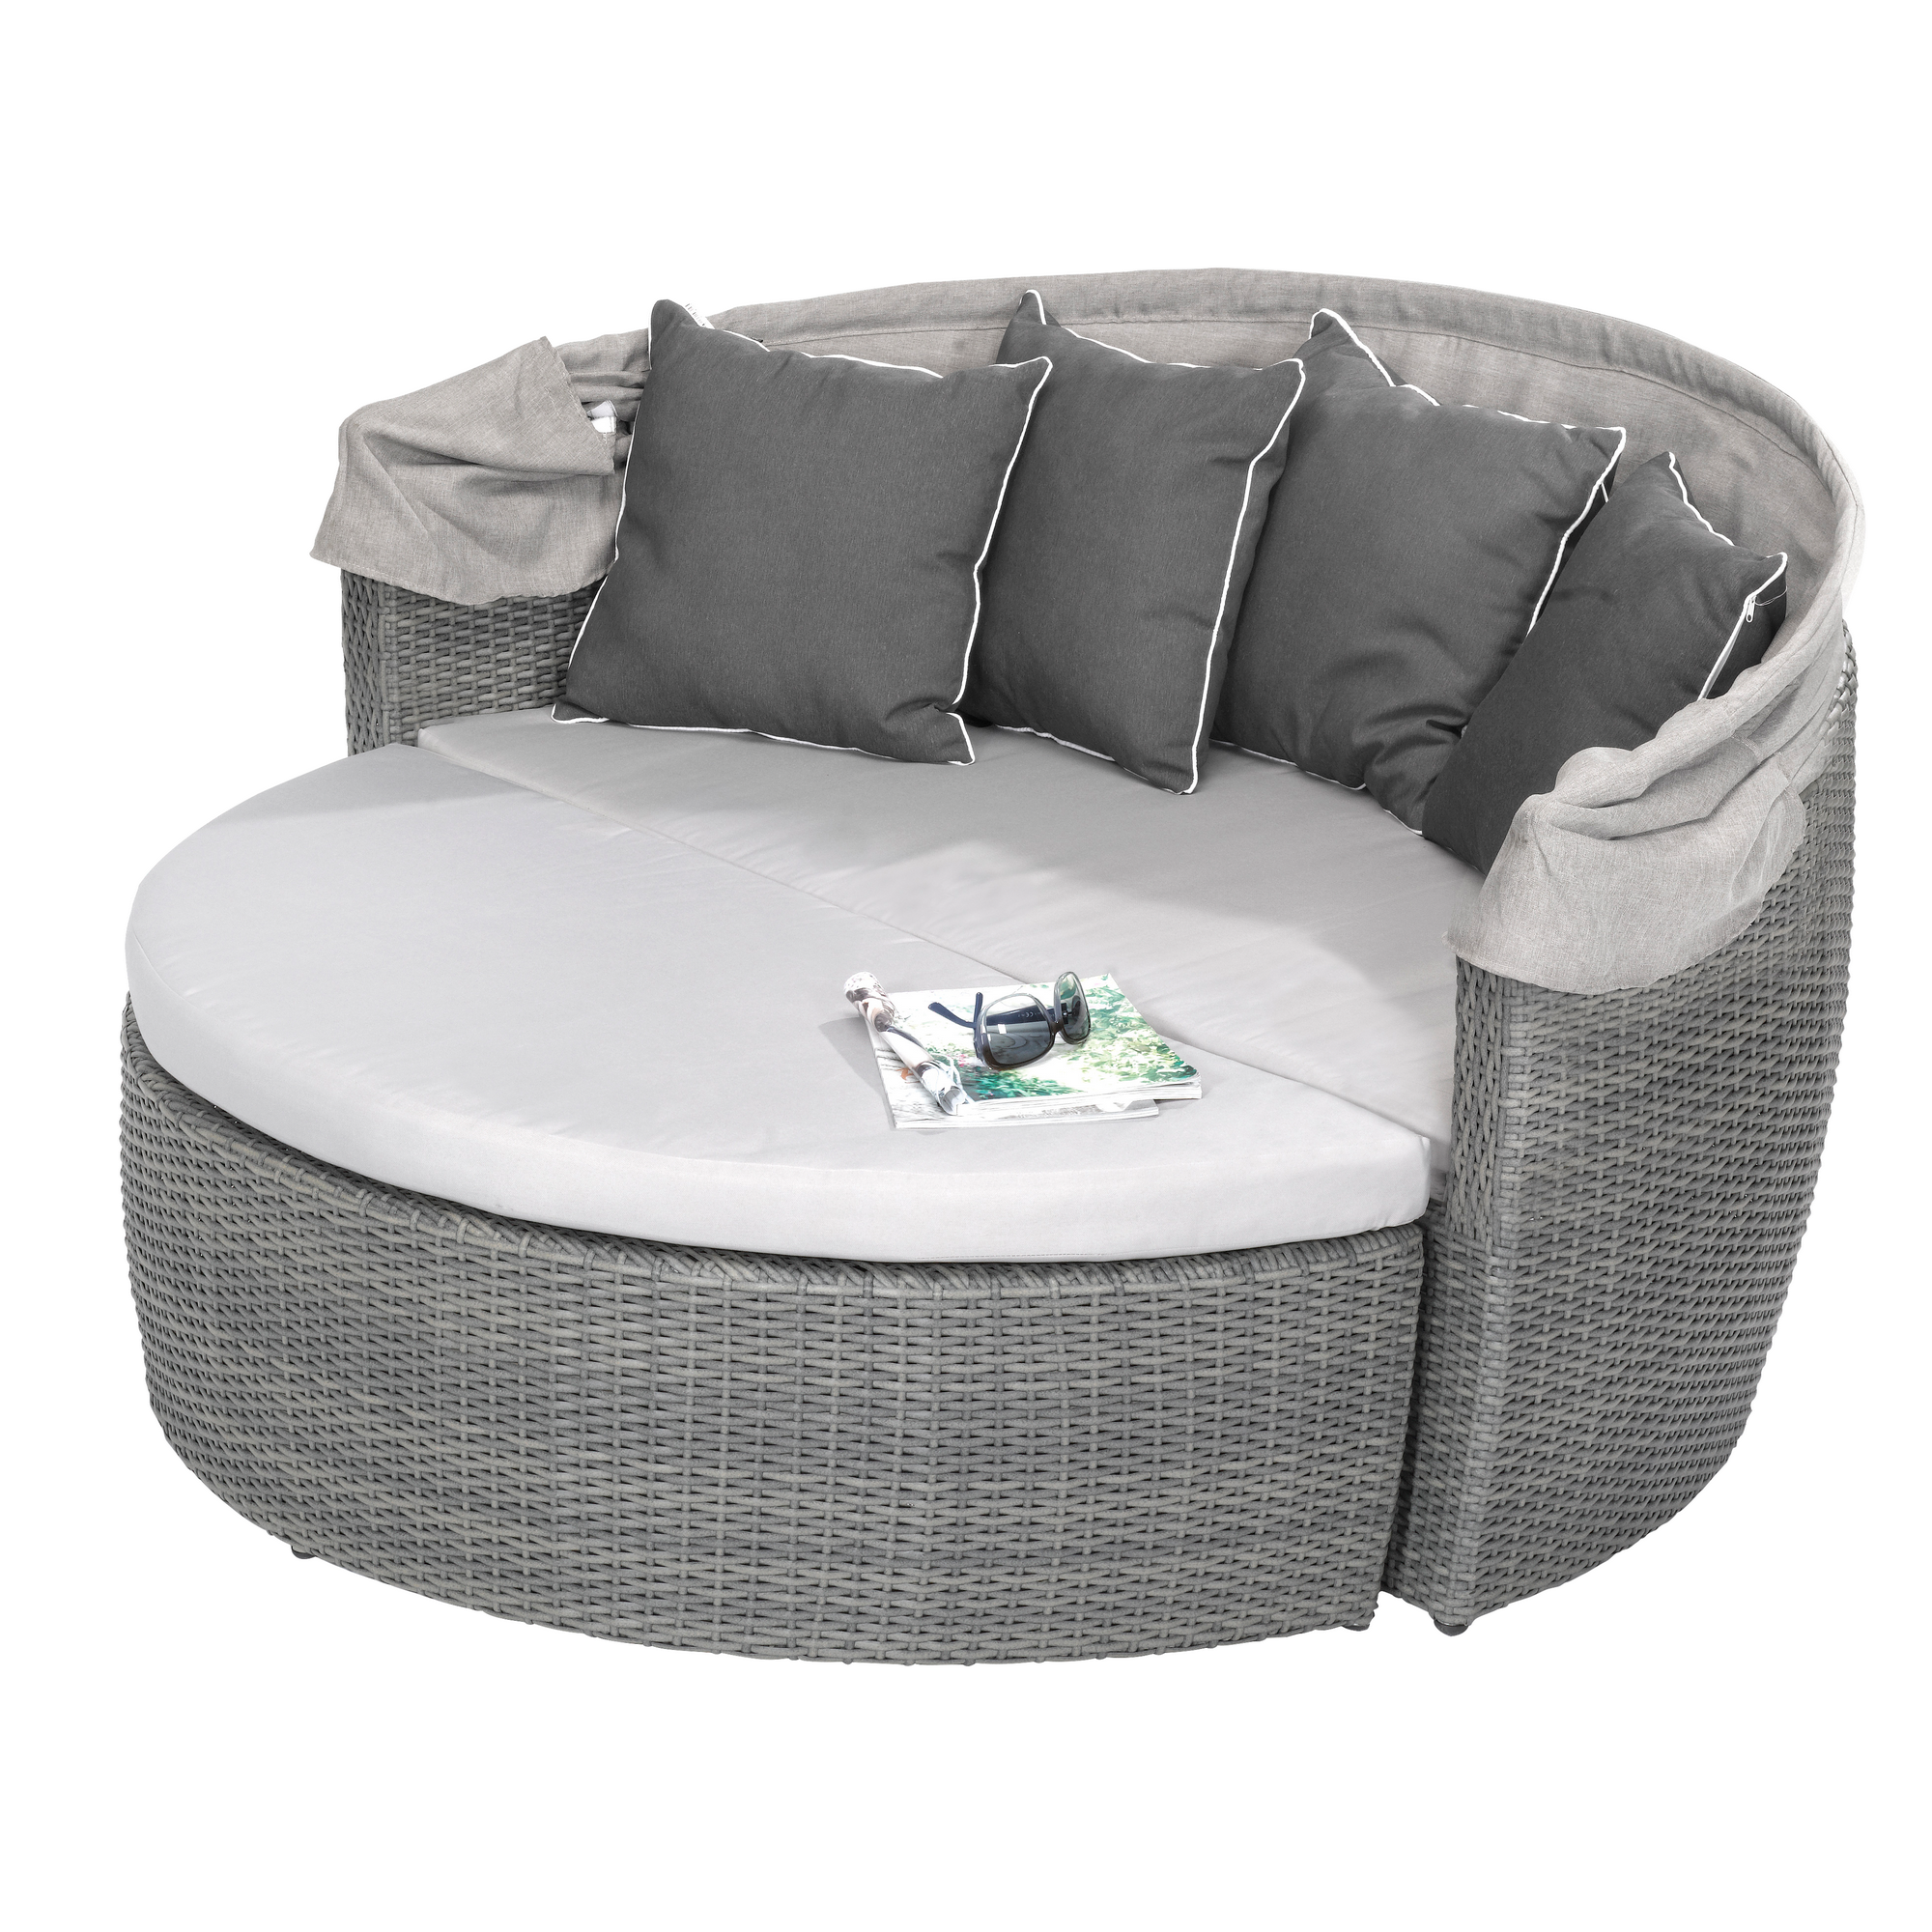 Lounge-Set 'Amelie' grau mit Sonnenschutz, 3-teilig + product picture